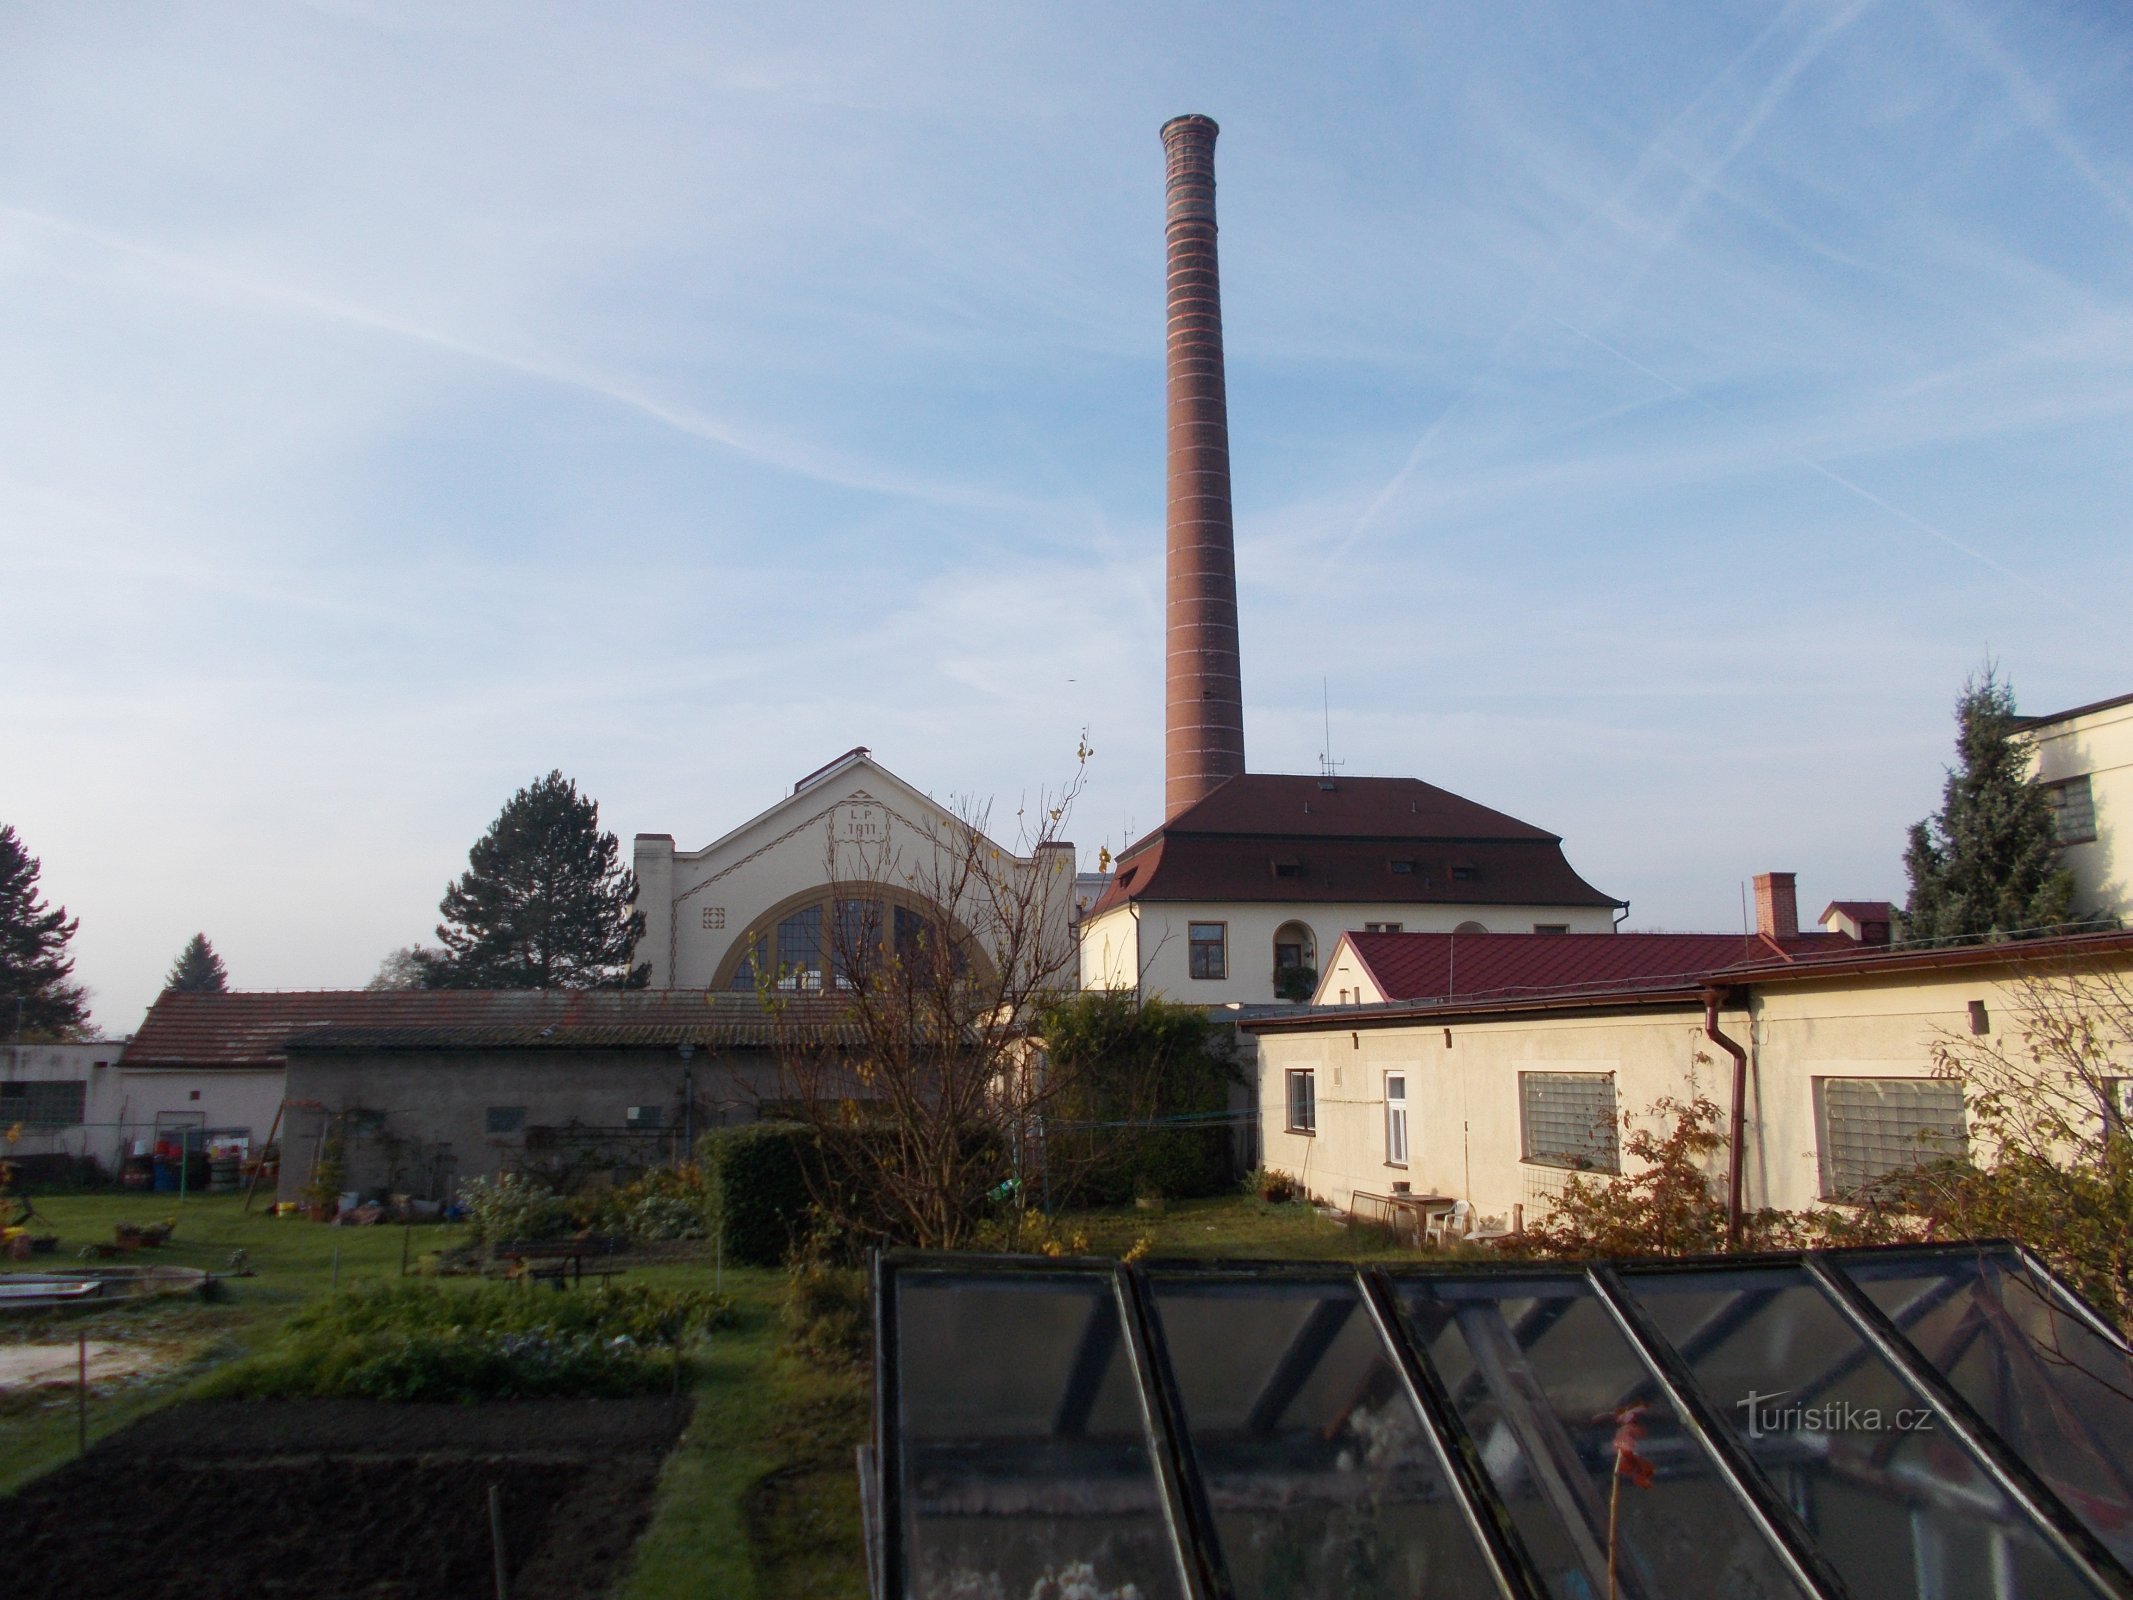 Kárány - drinking water treatment plant